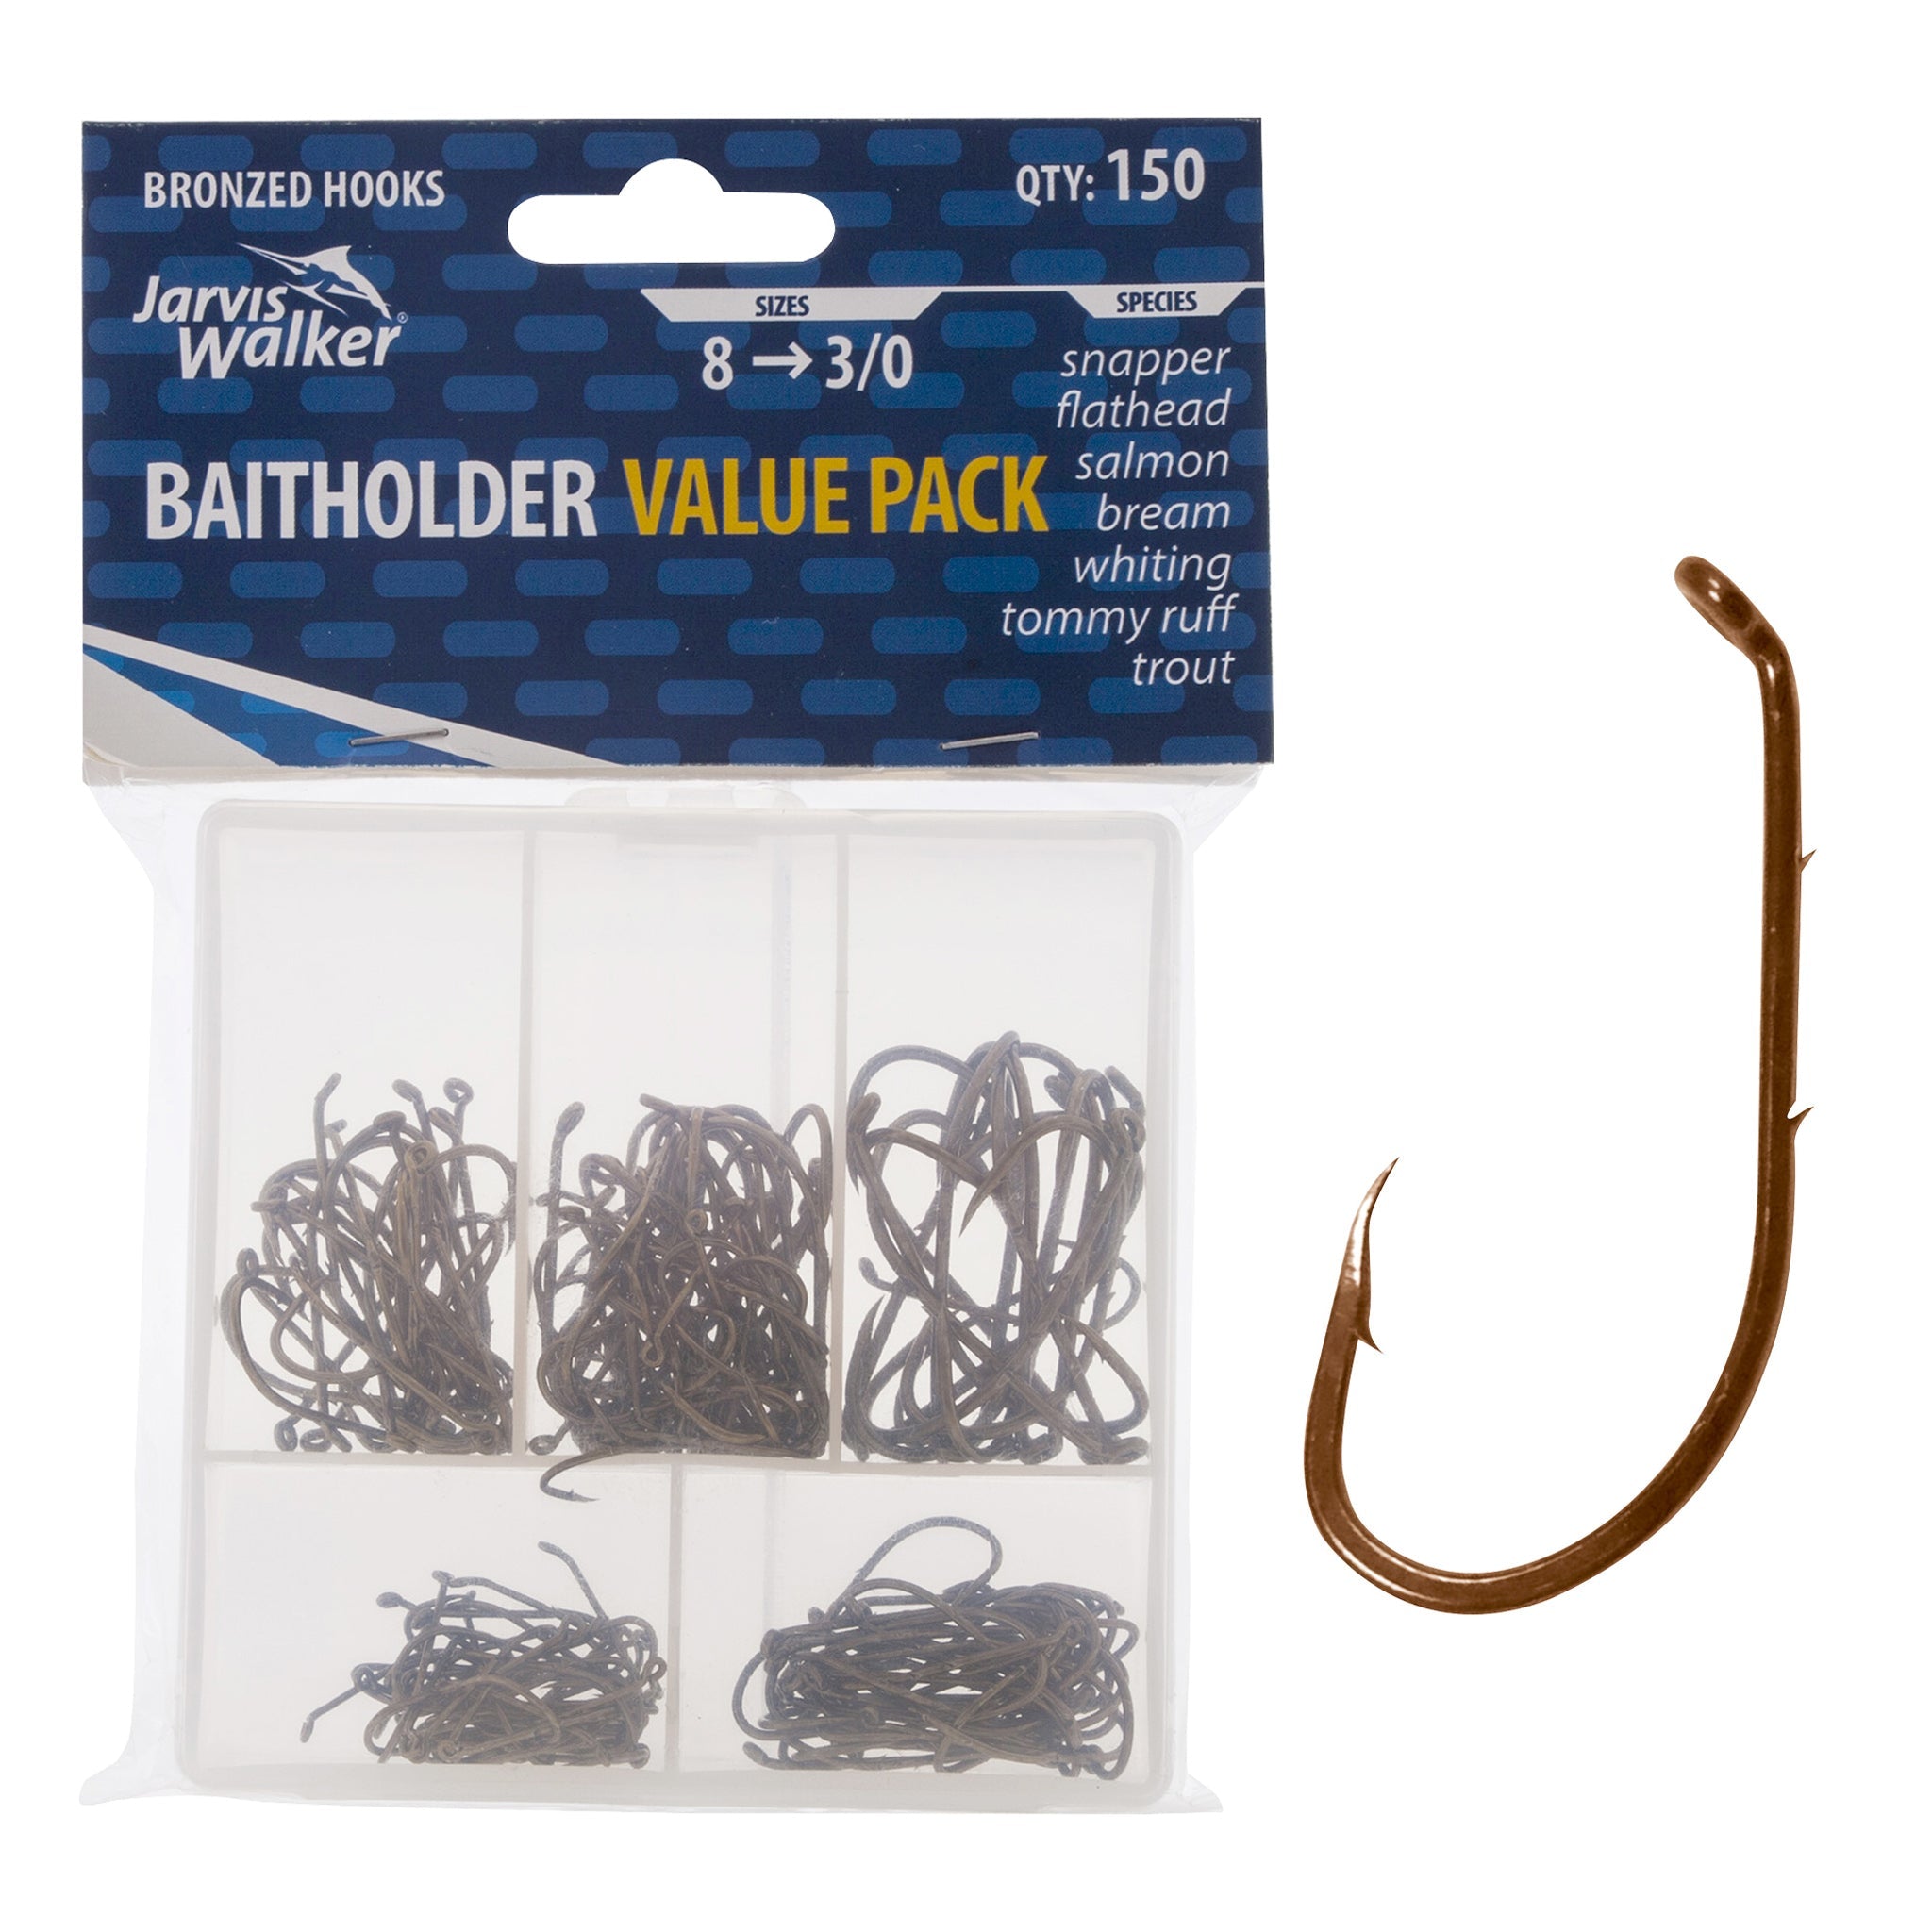 Jarvis Walker Chemically Sharpened Baitholder Hooks - 100 Packs – Jarvis  Walker Brands